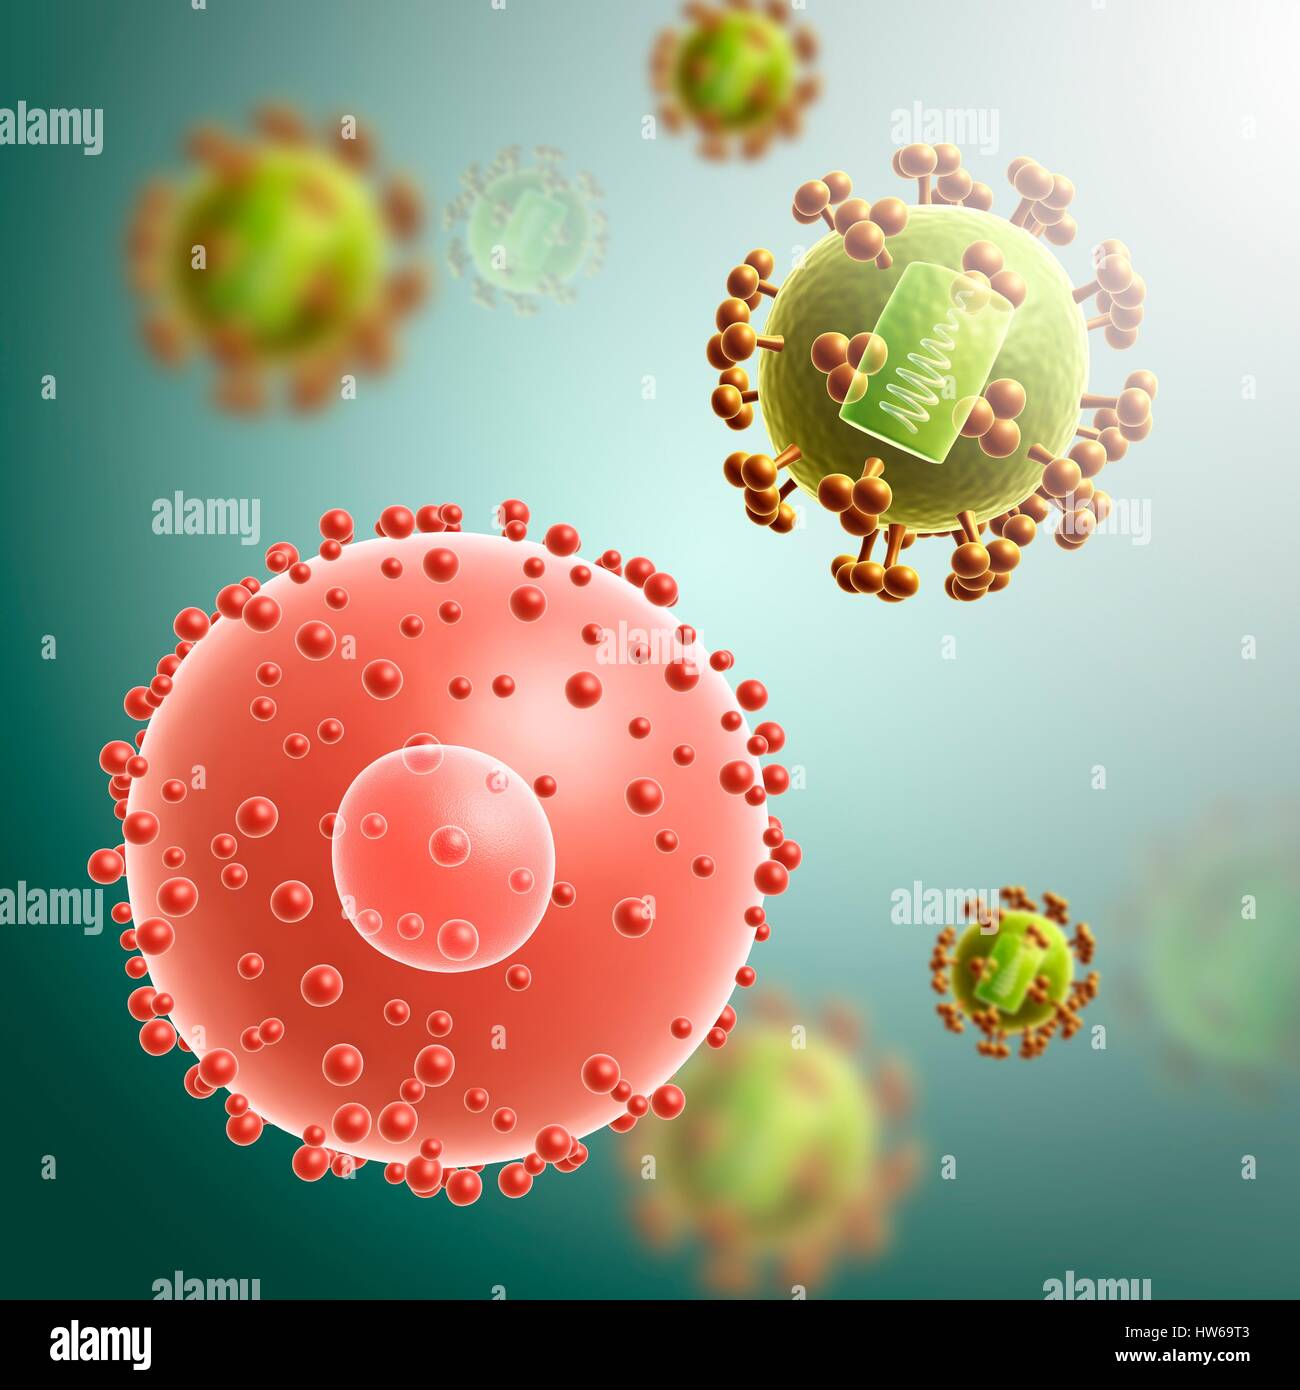 Illustrazione di una cellula infettata con il virus HIV. Foto Stock